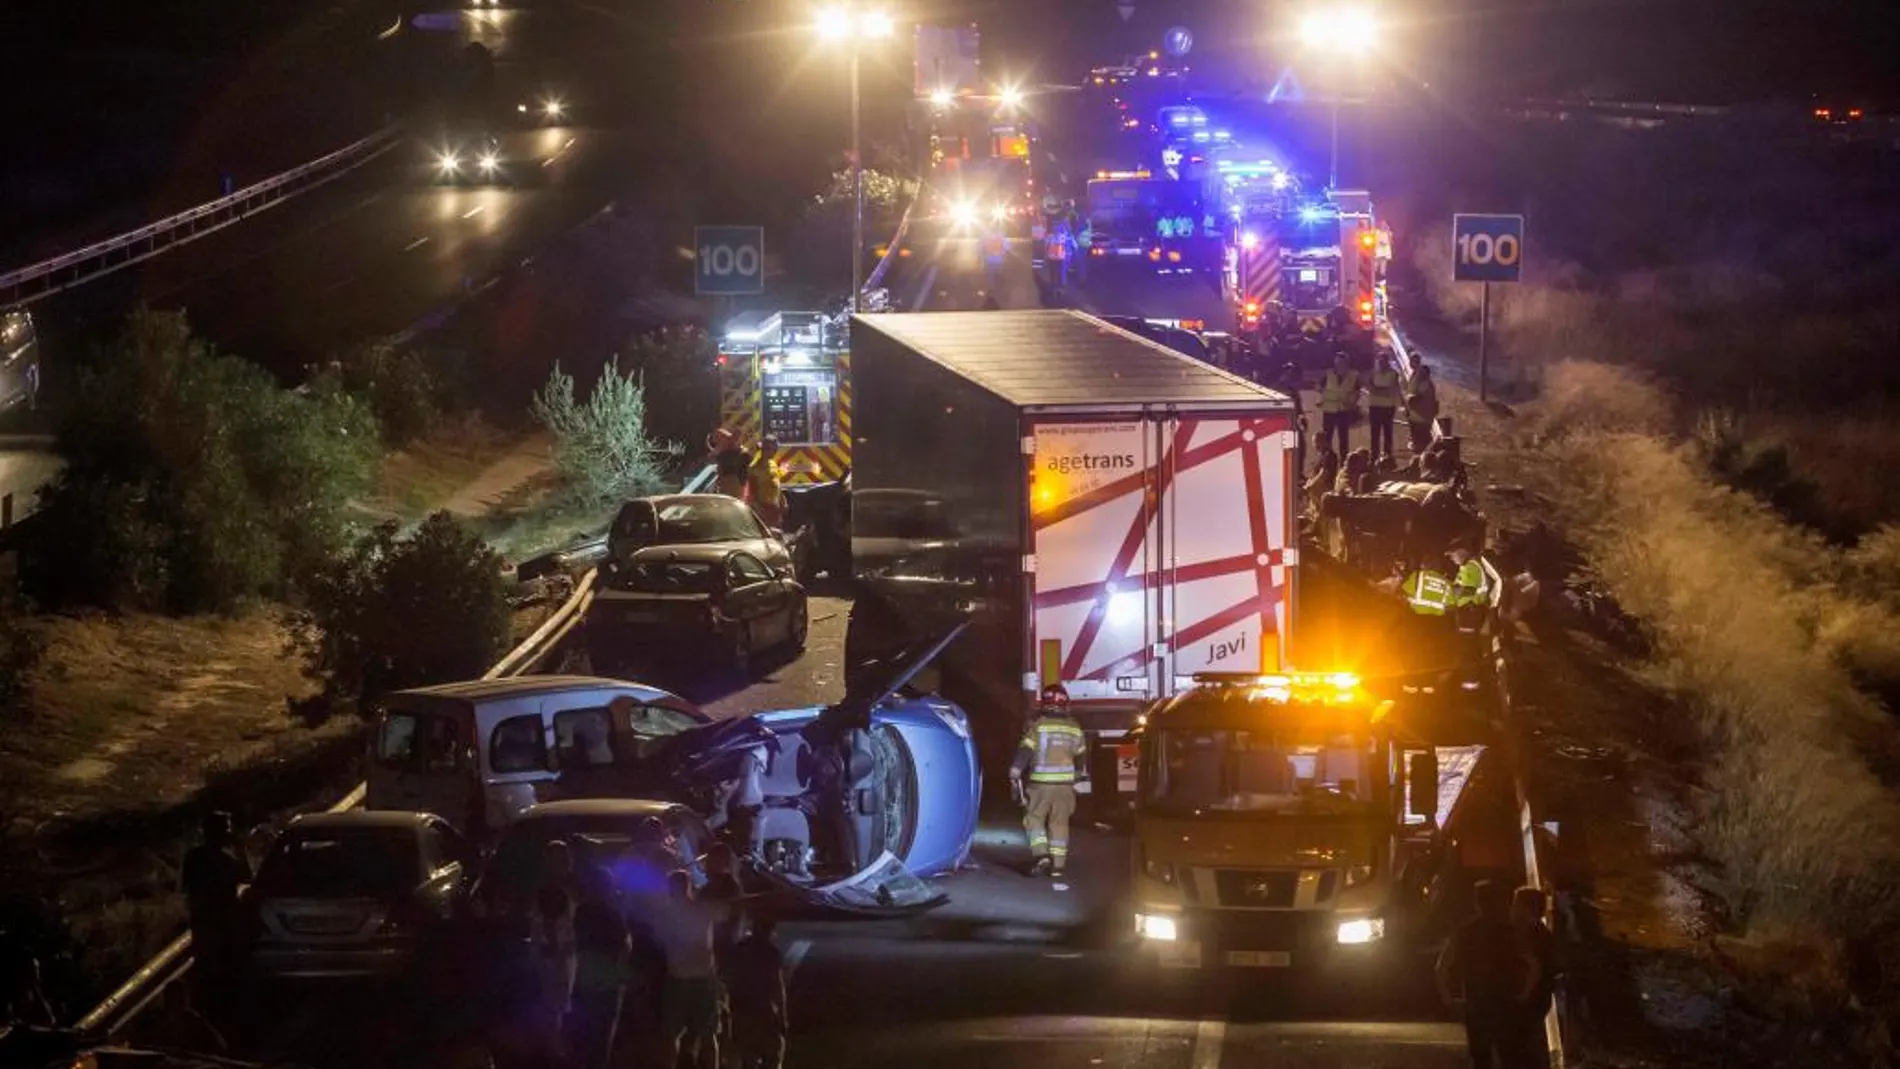 Vista general del accidente producido en la A-7 en dirección Murcia, a la altura de la localidad de Sangonera la Seca, en el que han resultado fallecidas cinco personas y se han visto implicados un total de trece vehículos.